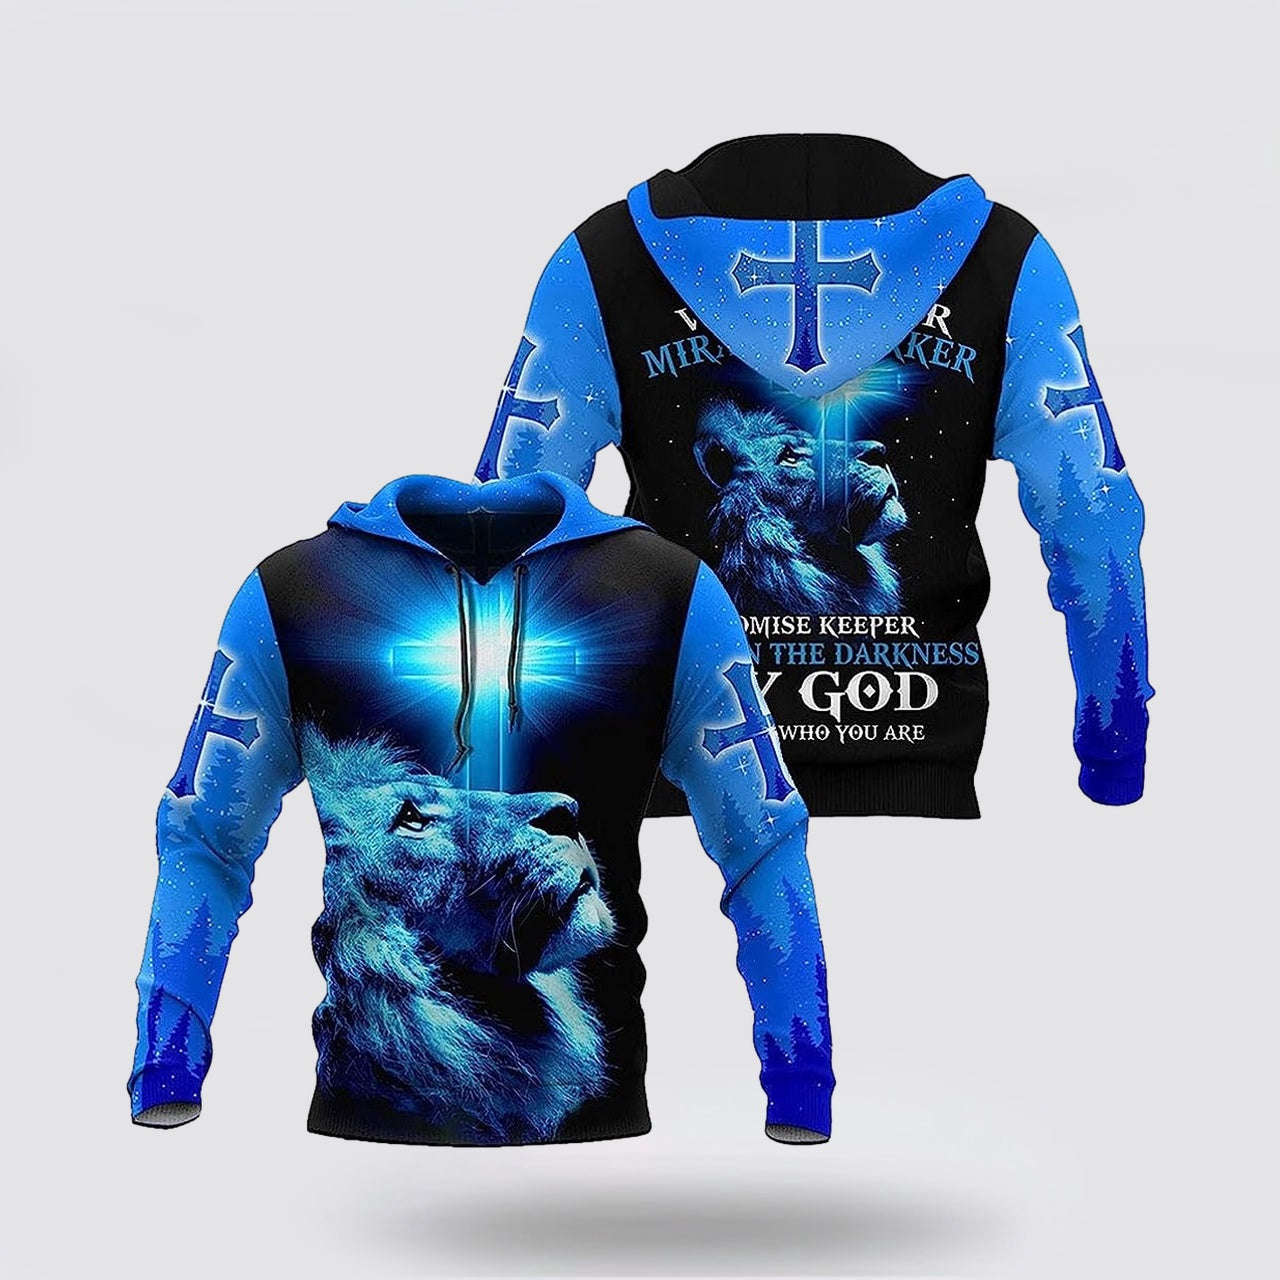 The King Lion Cross Light Blue 3d Hoodies For Women Men - Christian Apparel Hoodies